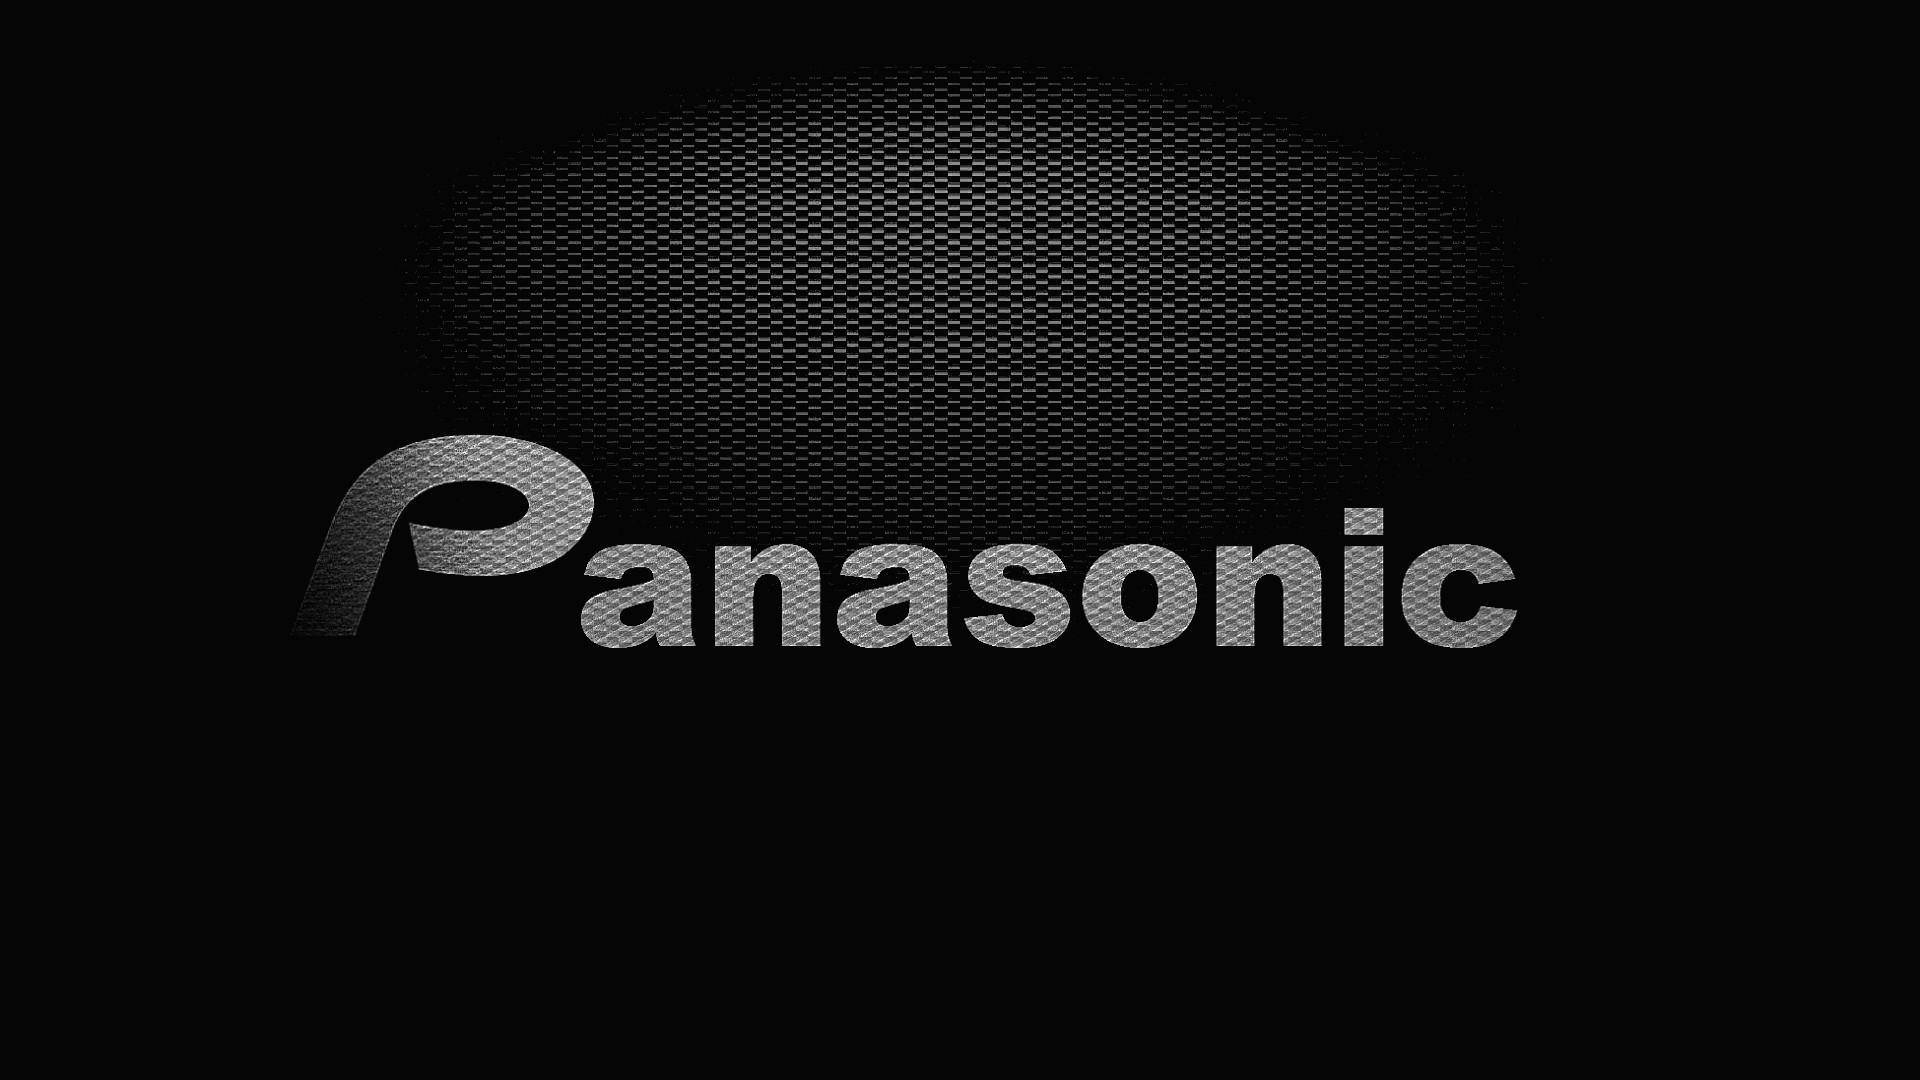 Grå Panasonic i sort geometrisk Wallpaper